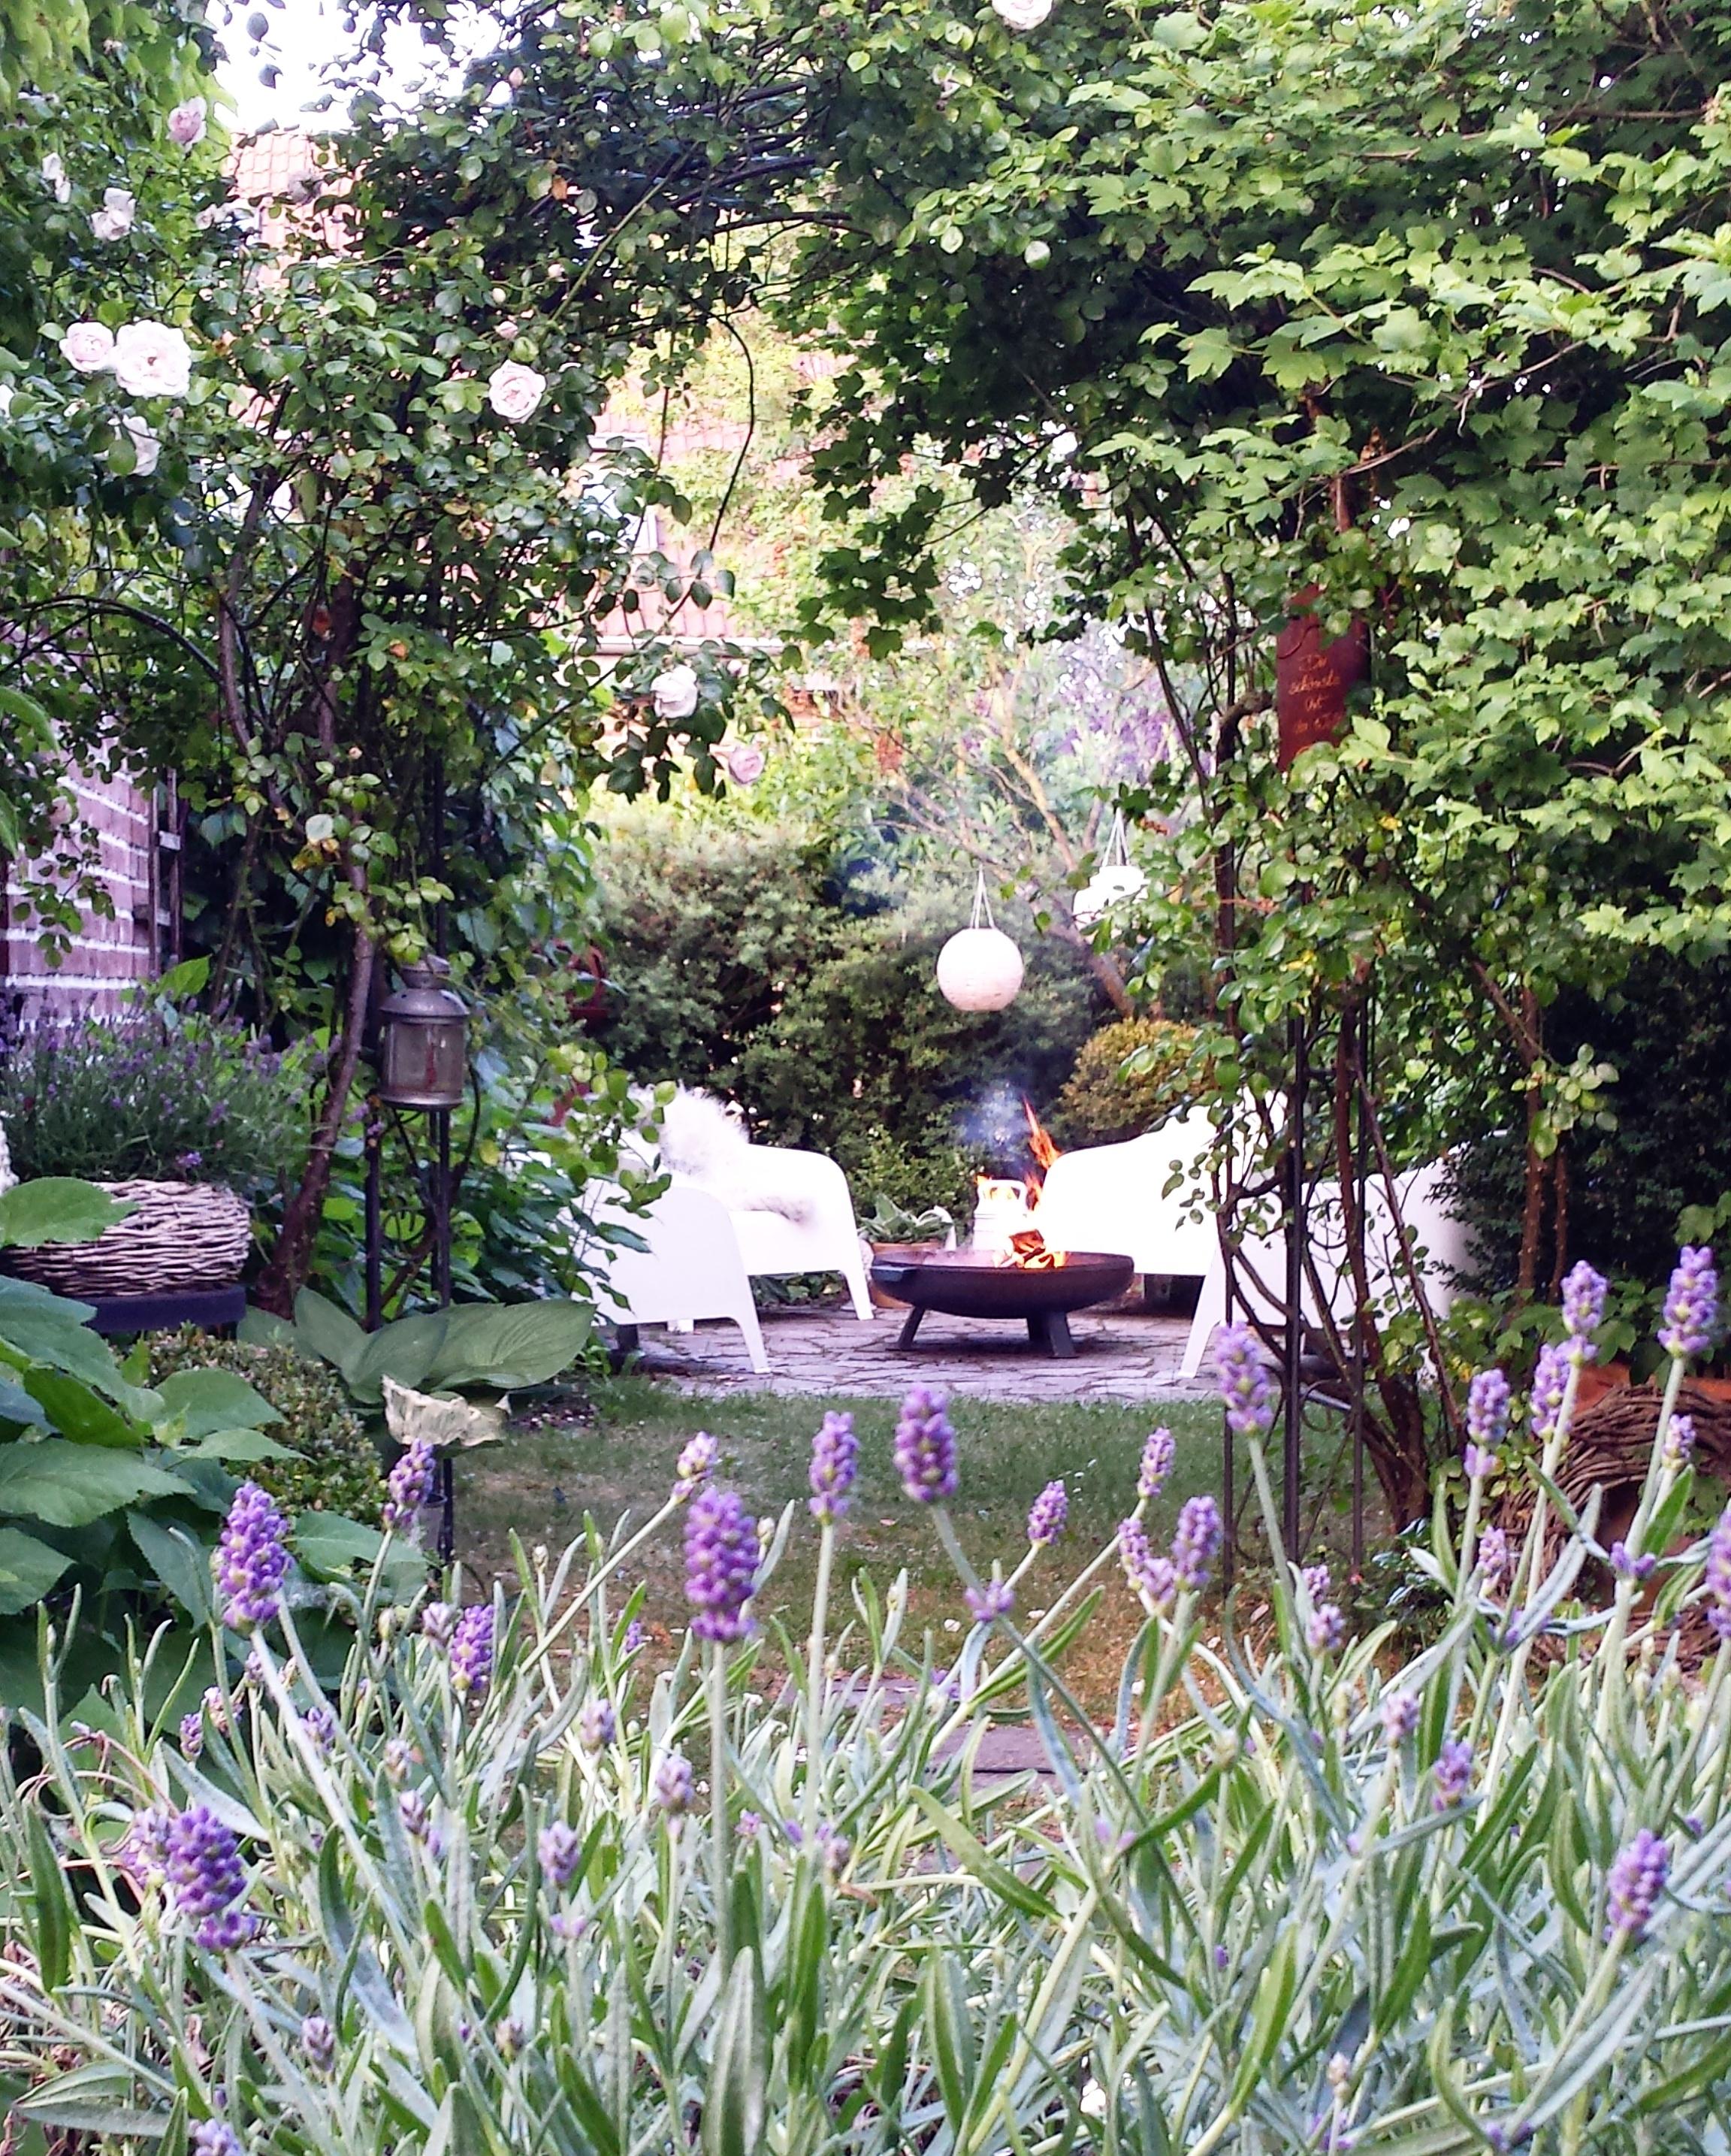 Gartenimpression. ......
#garten #terrasse #sommer #feuerplatz #feuerschale #lavendel